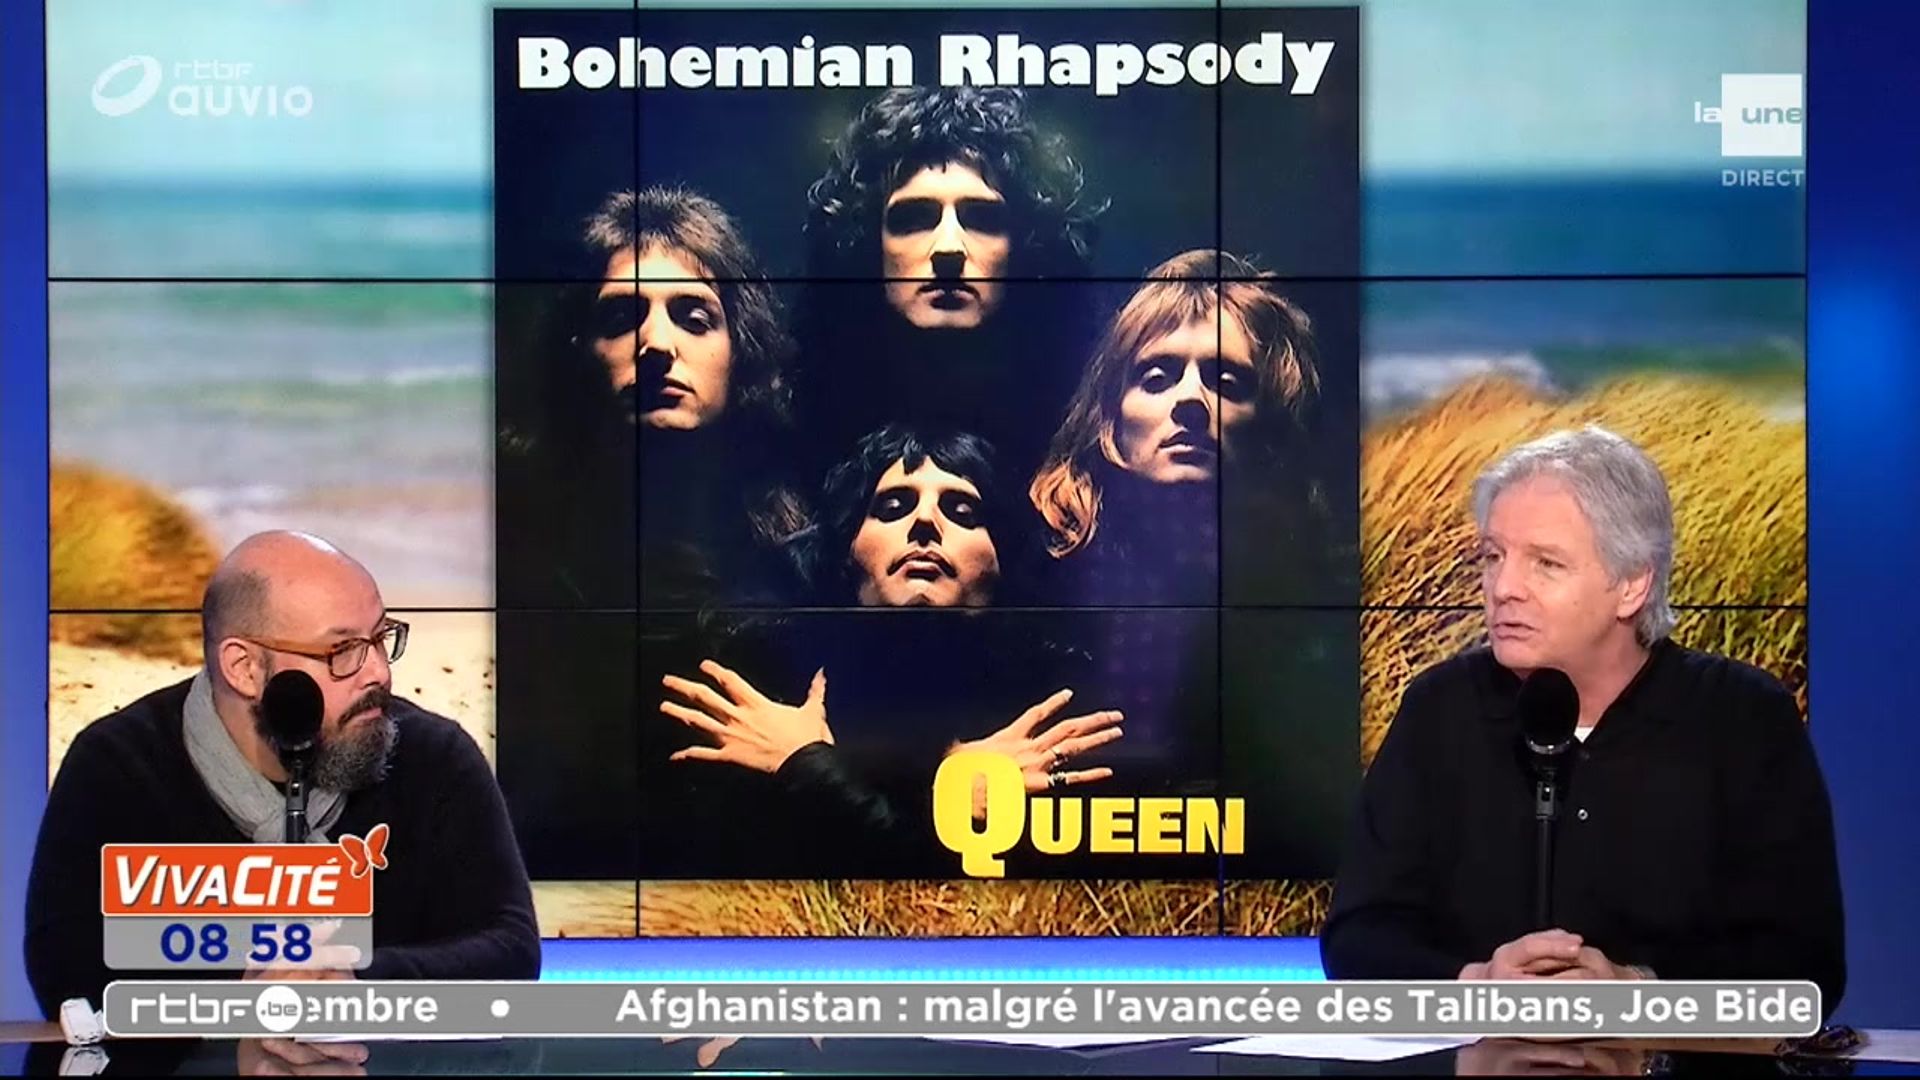 Bohemian Rhapsody Le Film - Partition complète